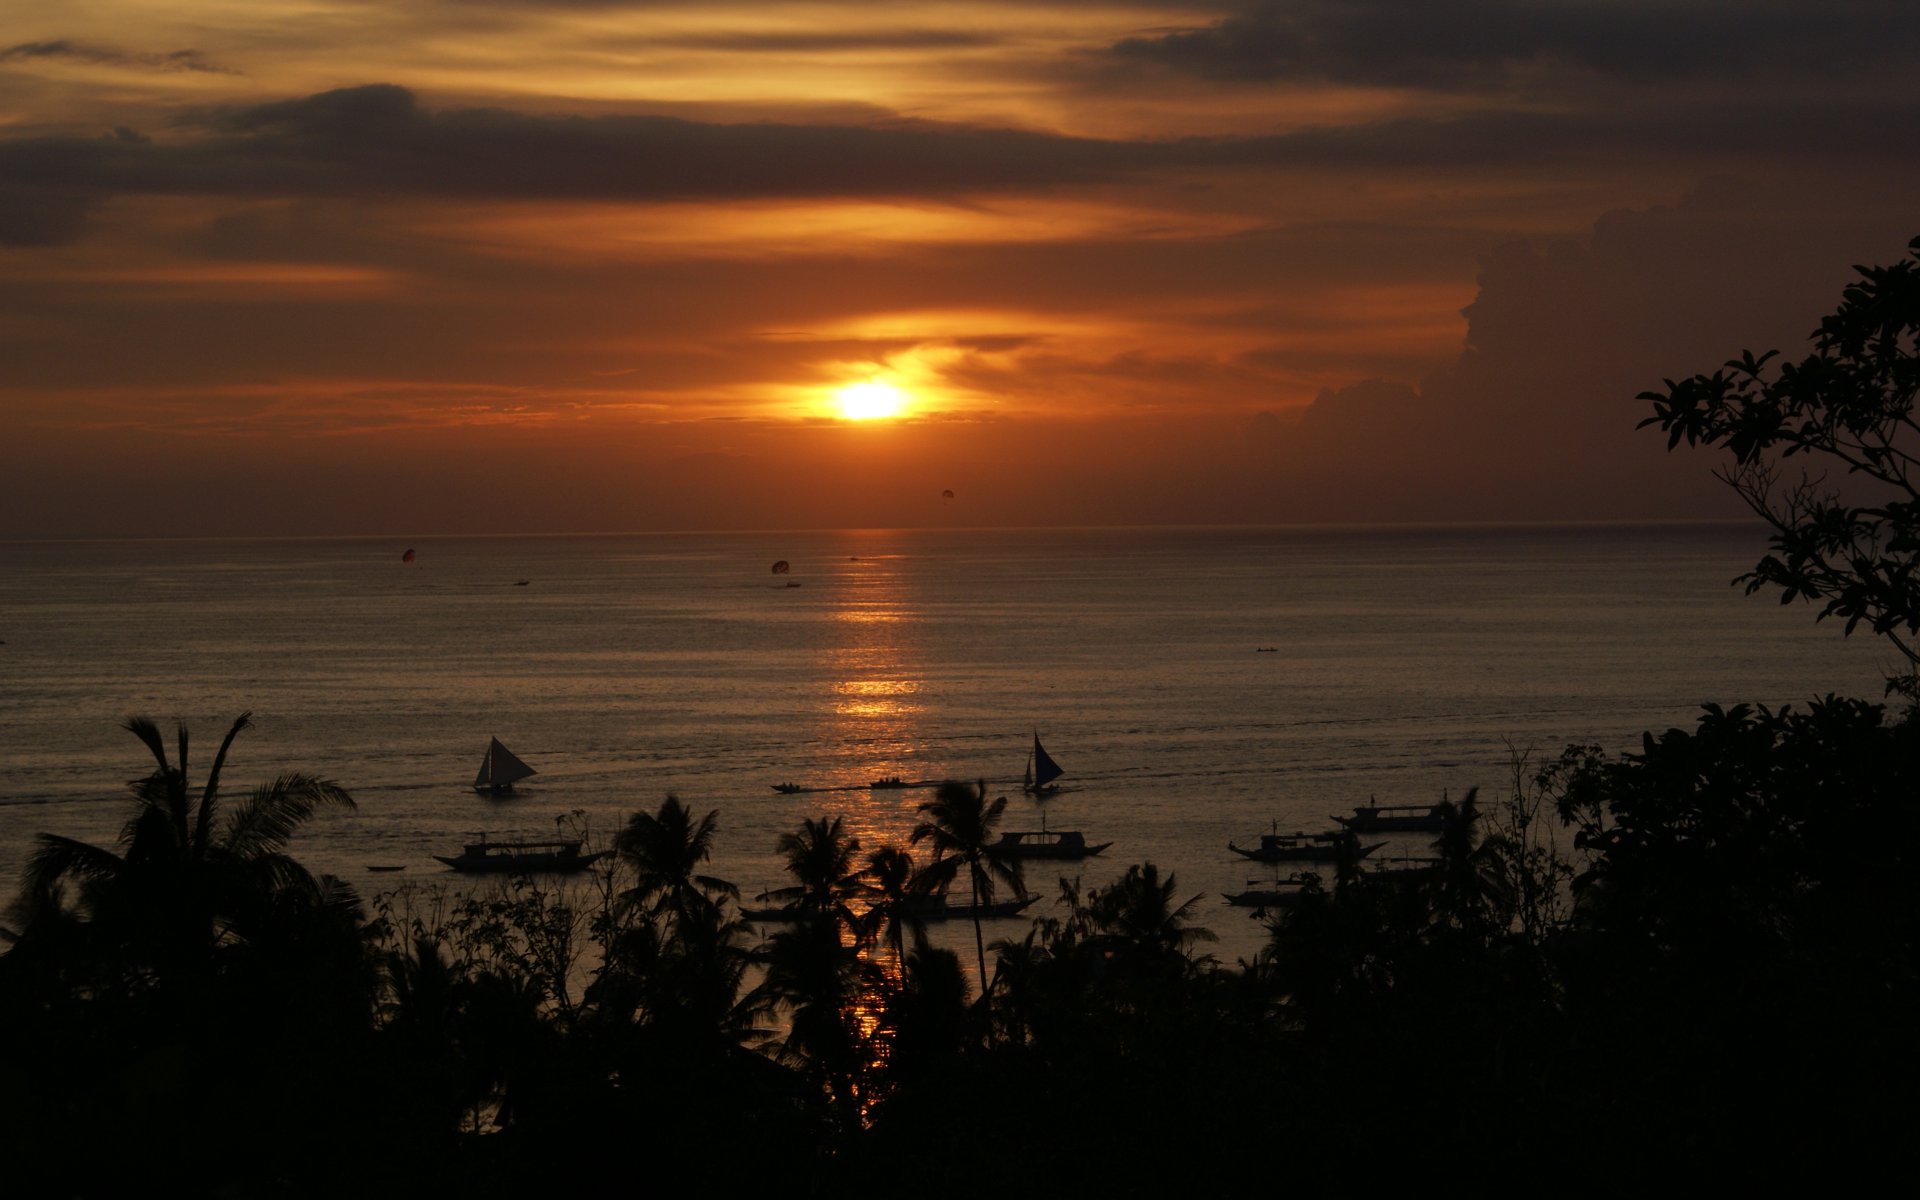 océano hd live wallpaper,cielo,horizonte,puesta de sol,amanecer,mar